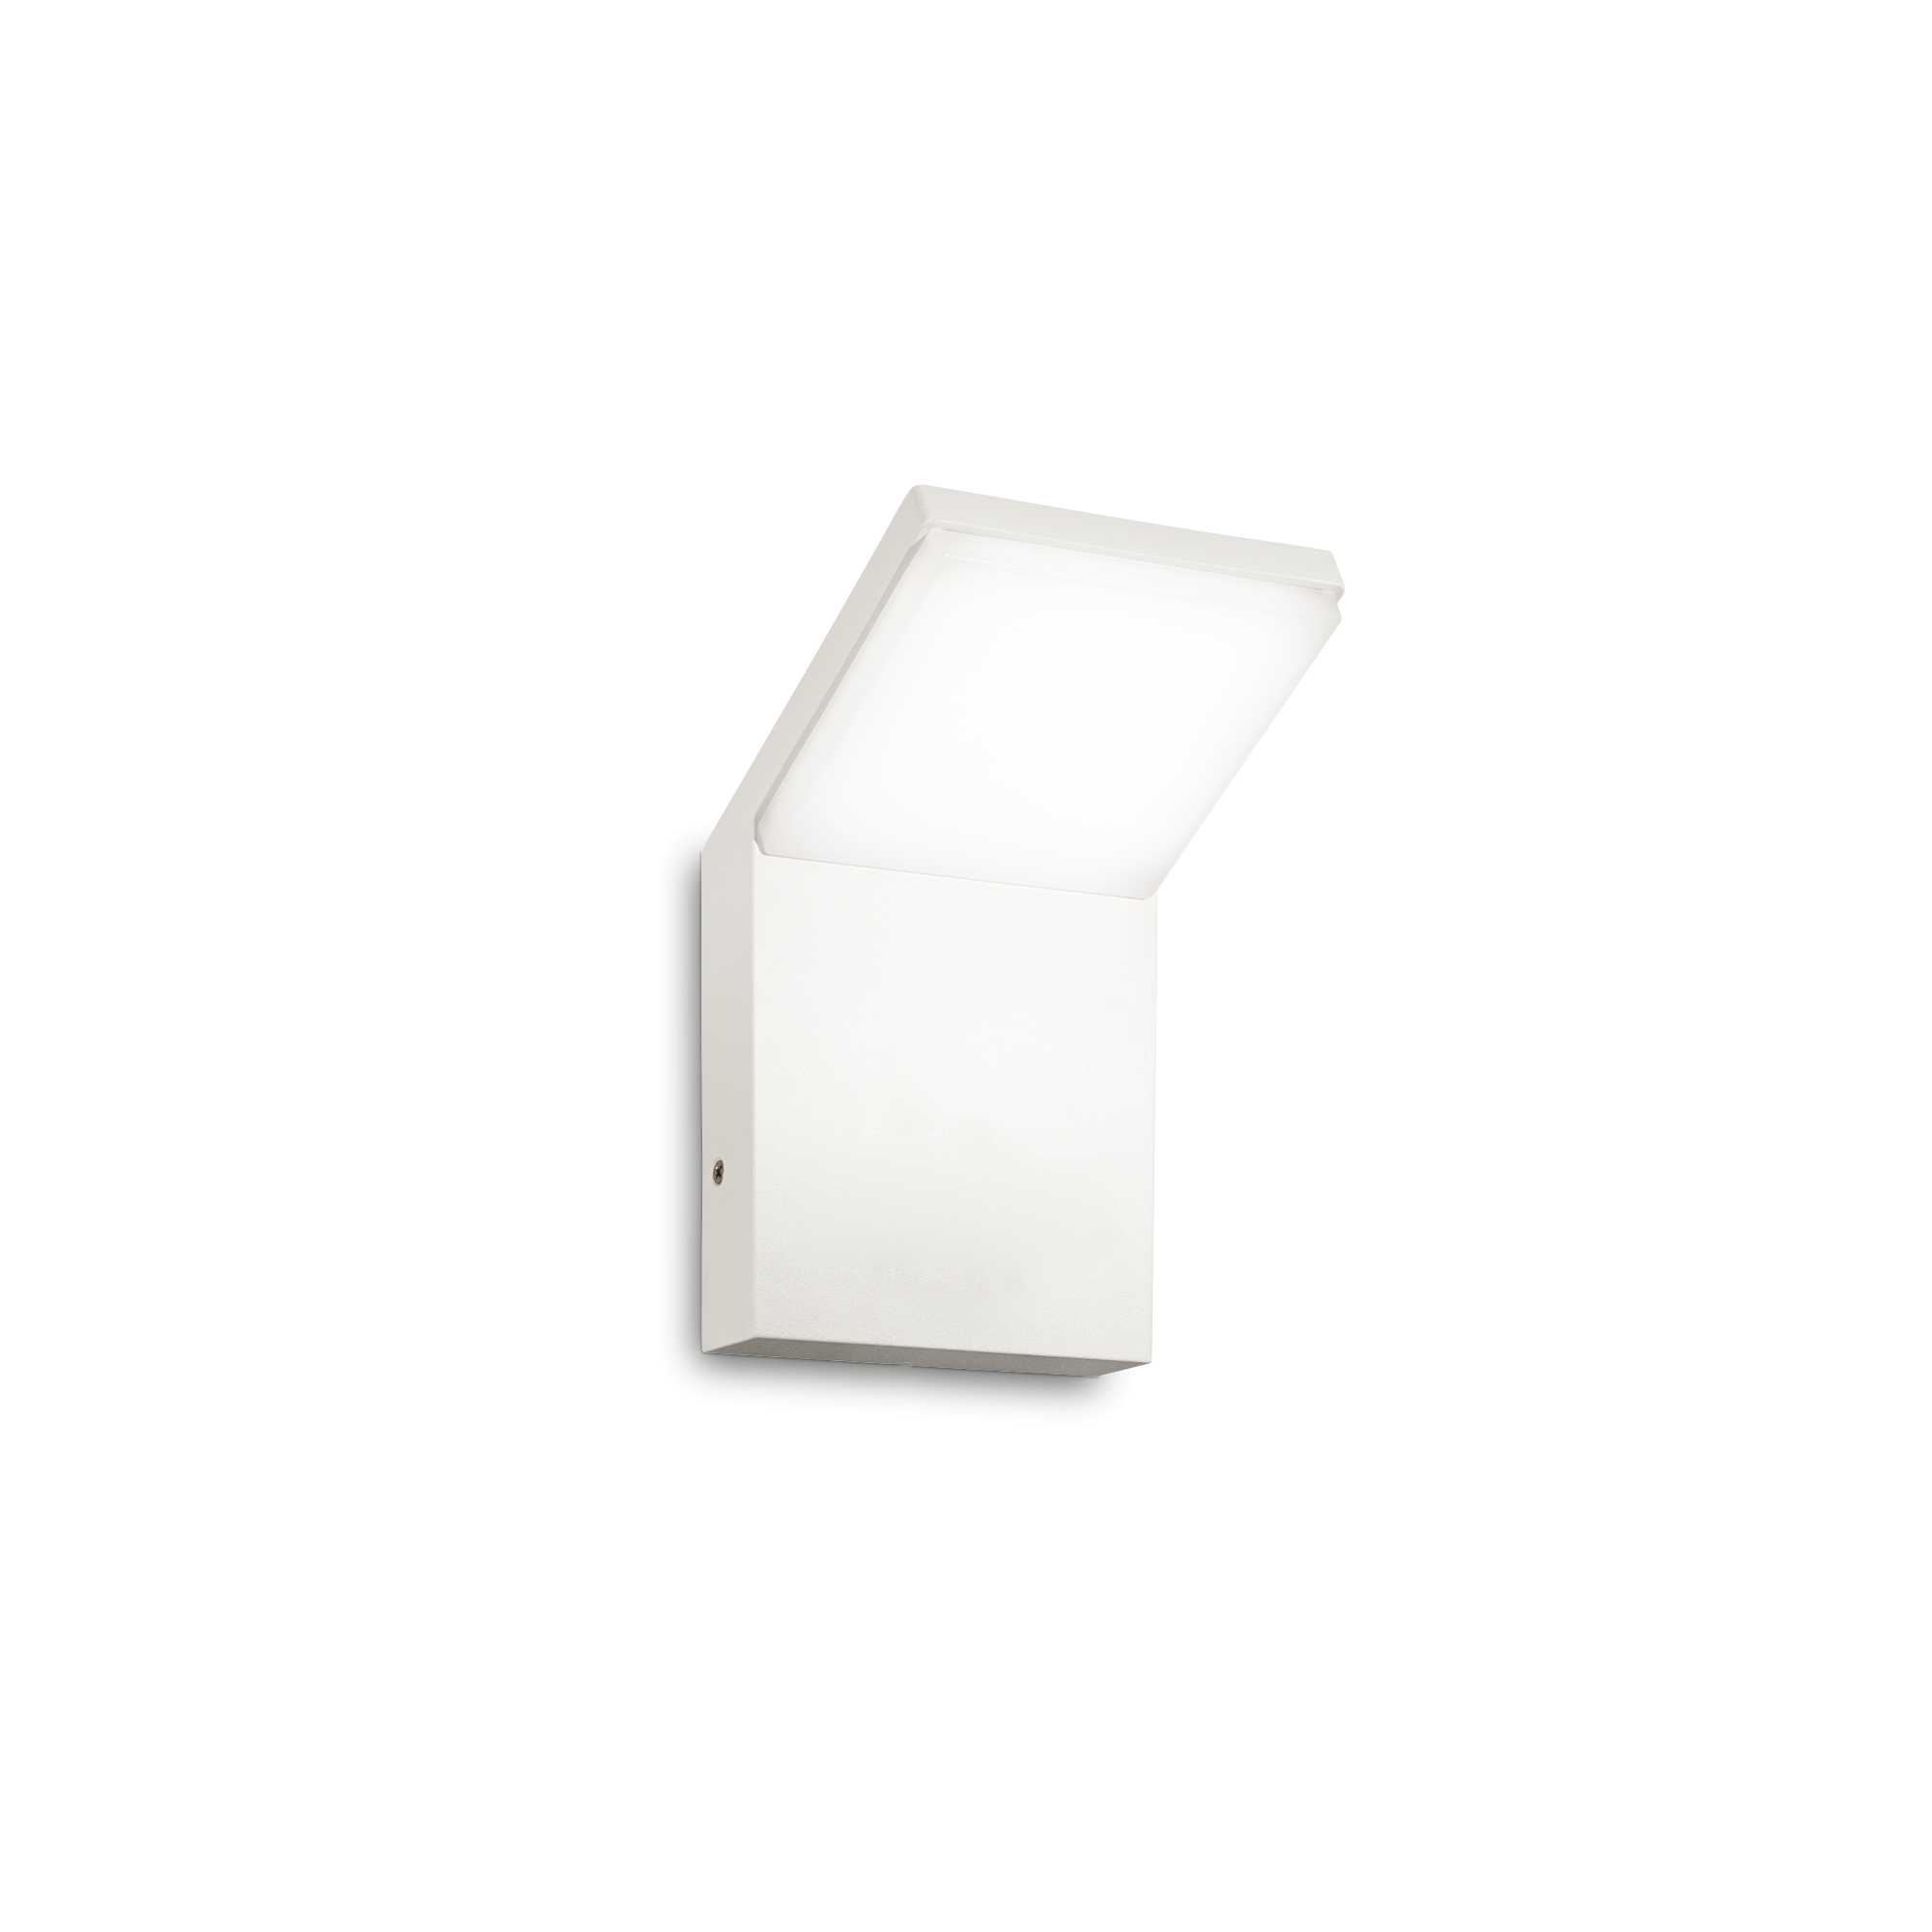 AD hotelska oprema Vanjska zidna lampa Style ap (4000k)- Bijele boje slika proizvoda